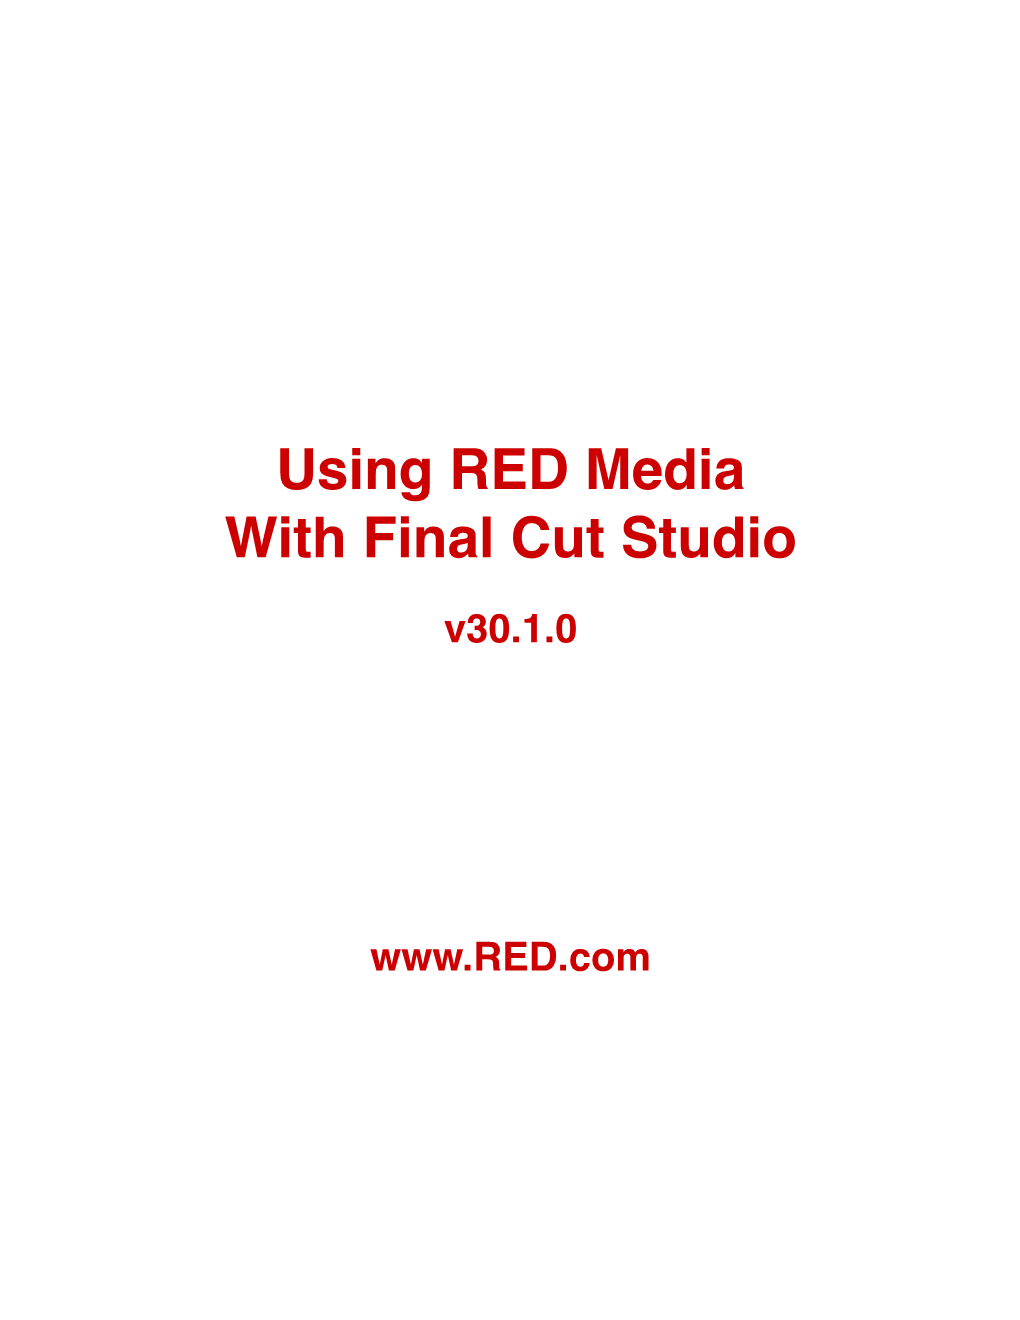 RED FCS Whitepaper V3